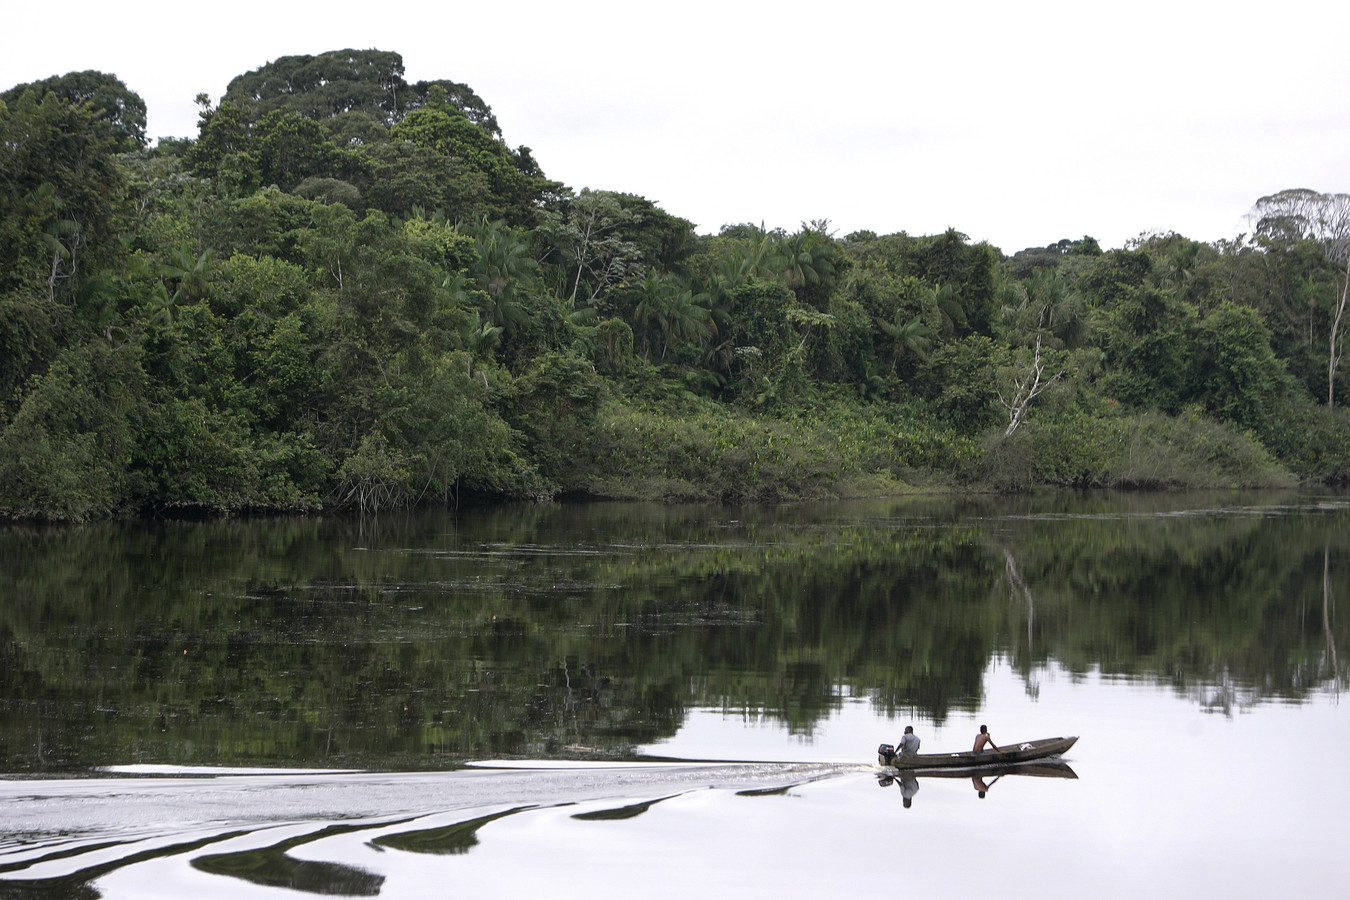 Binnenlanden van het plaatsje Moengo, gelegen in het district Marowijne in Suriname.